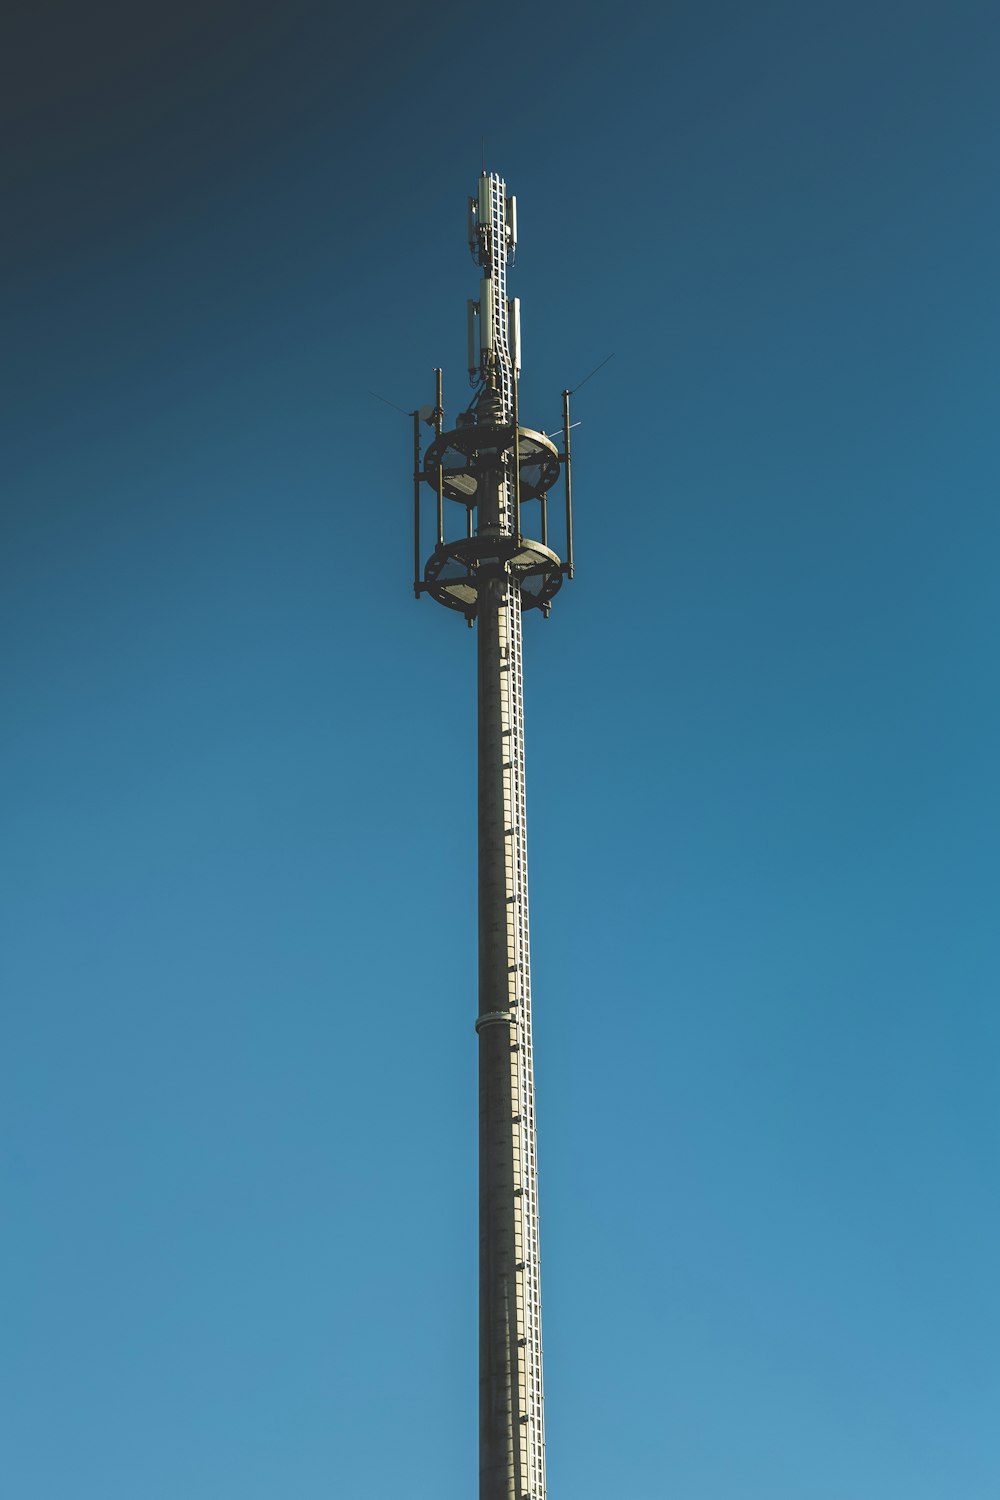 torre en blanco y negro bajo el cielo azul durante el día